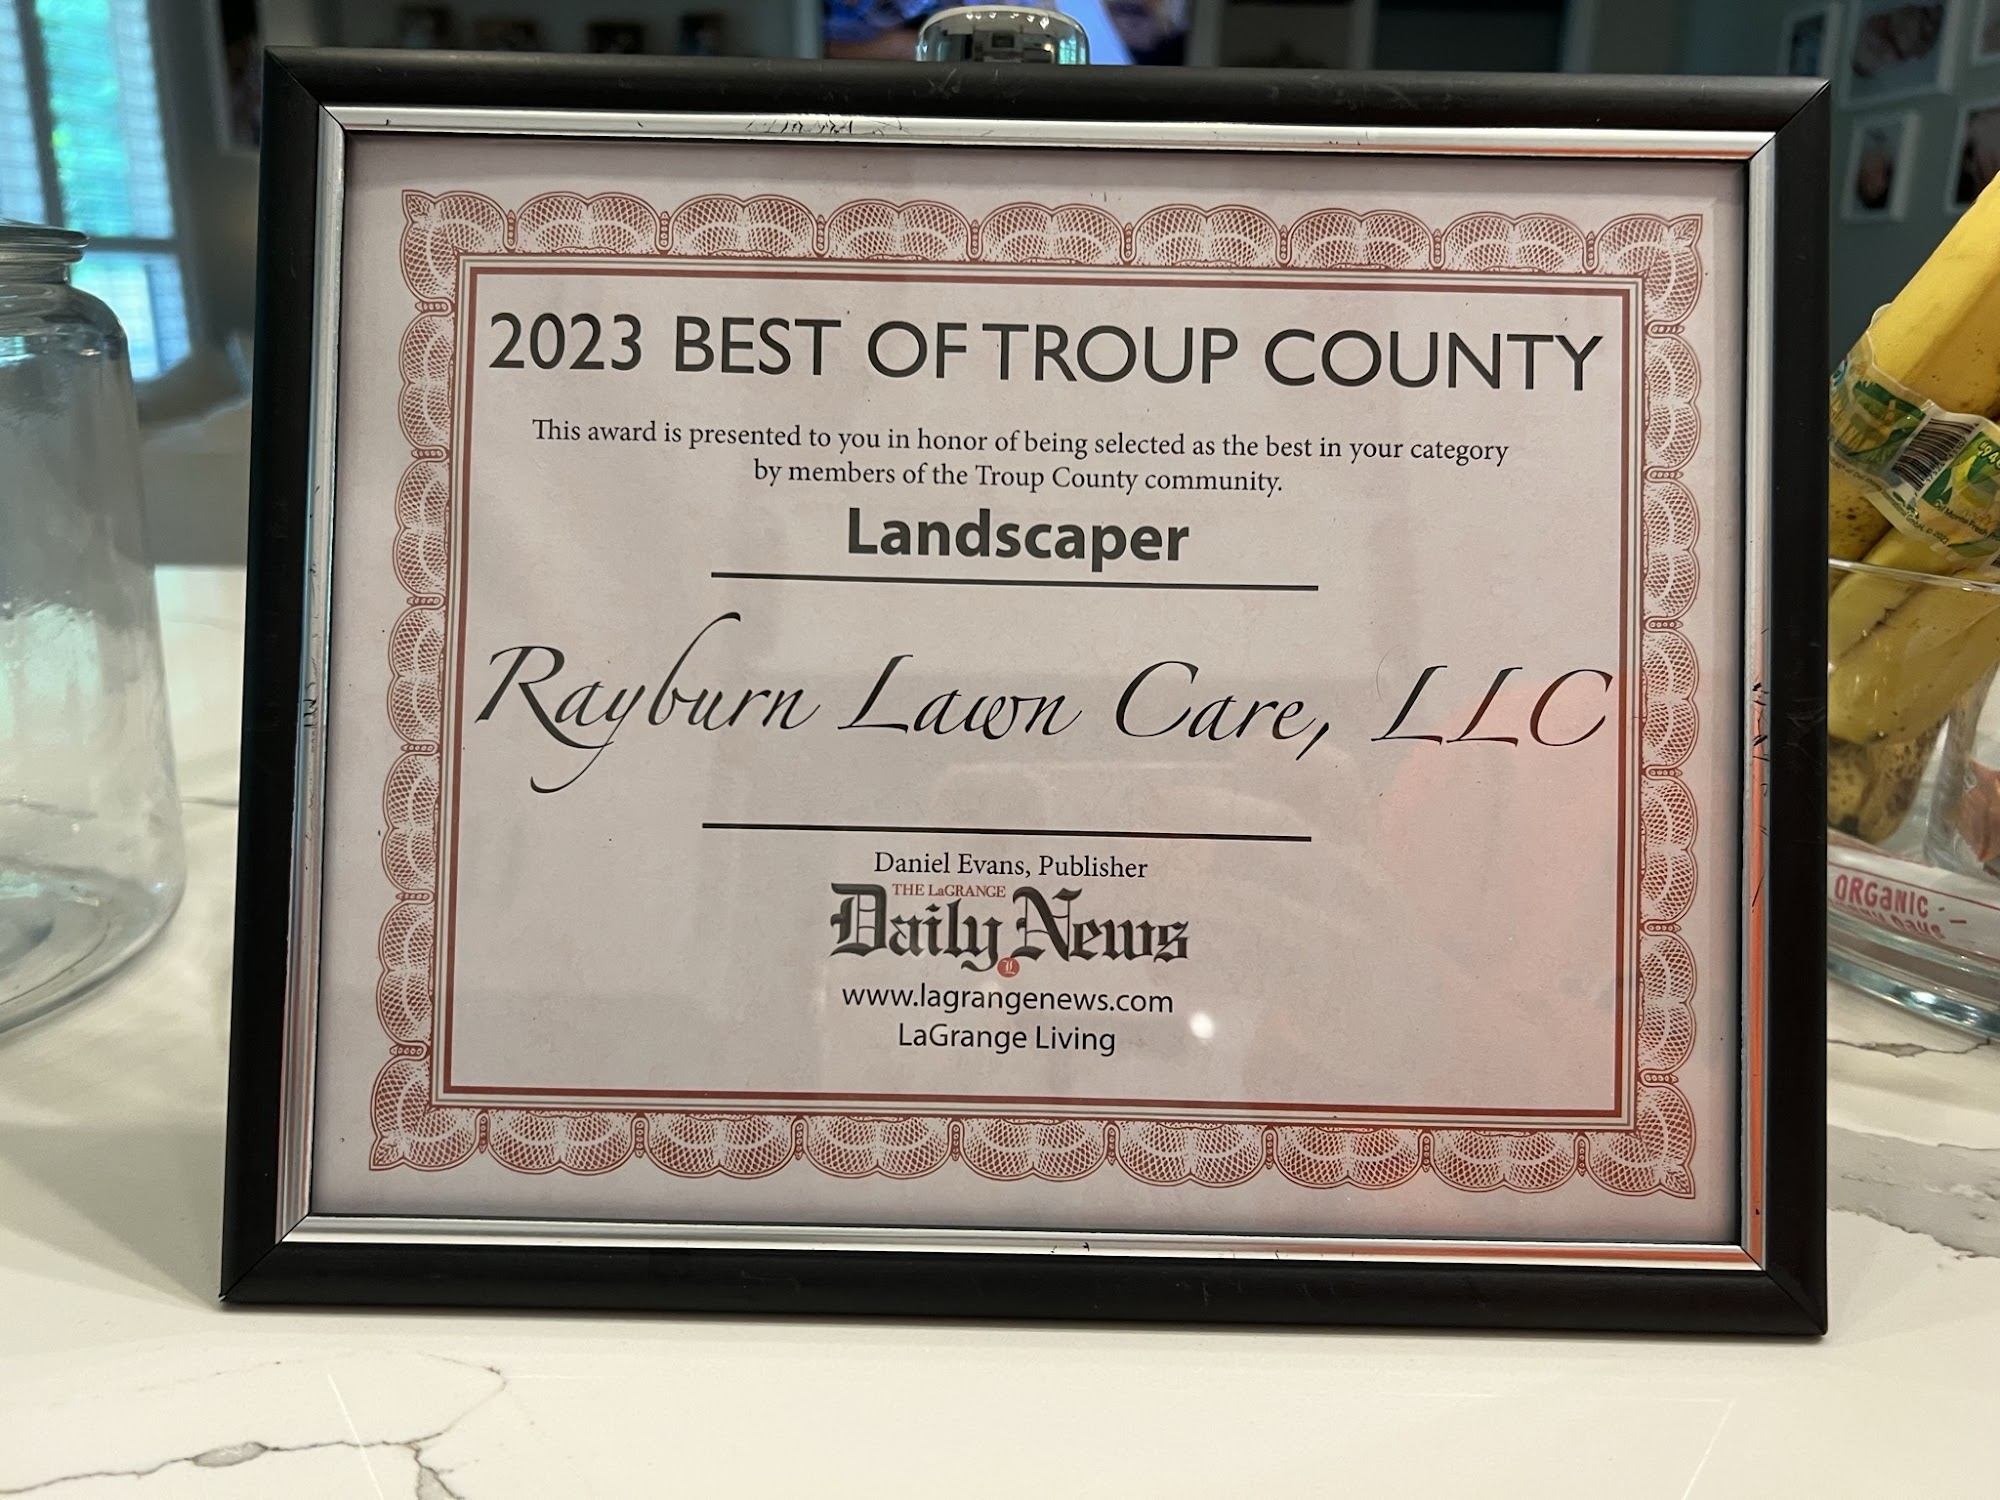 Rayburn Lawn Care LLC